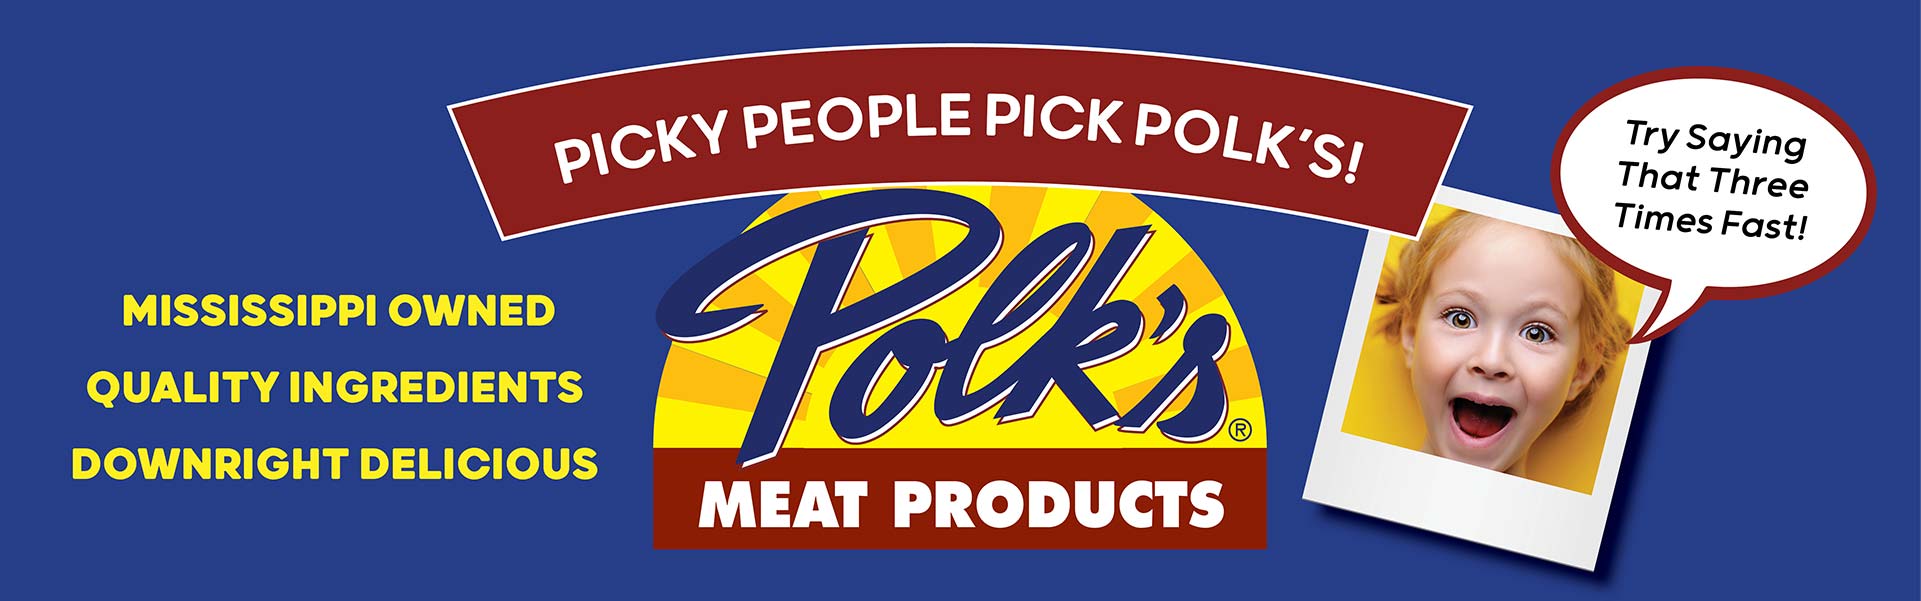 Picky People Pick Polk's